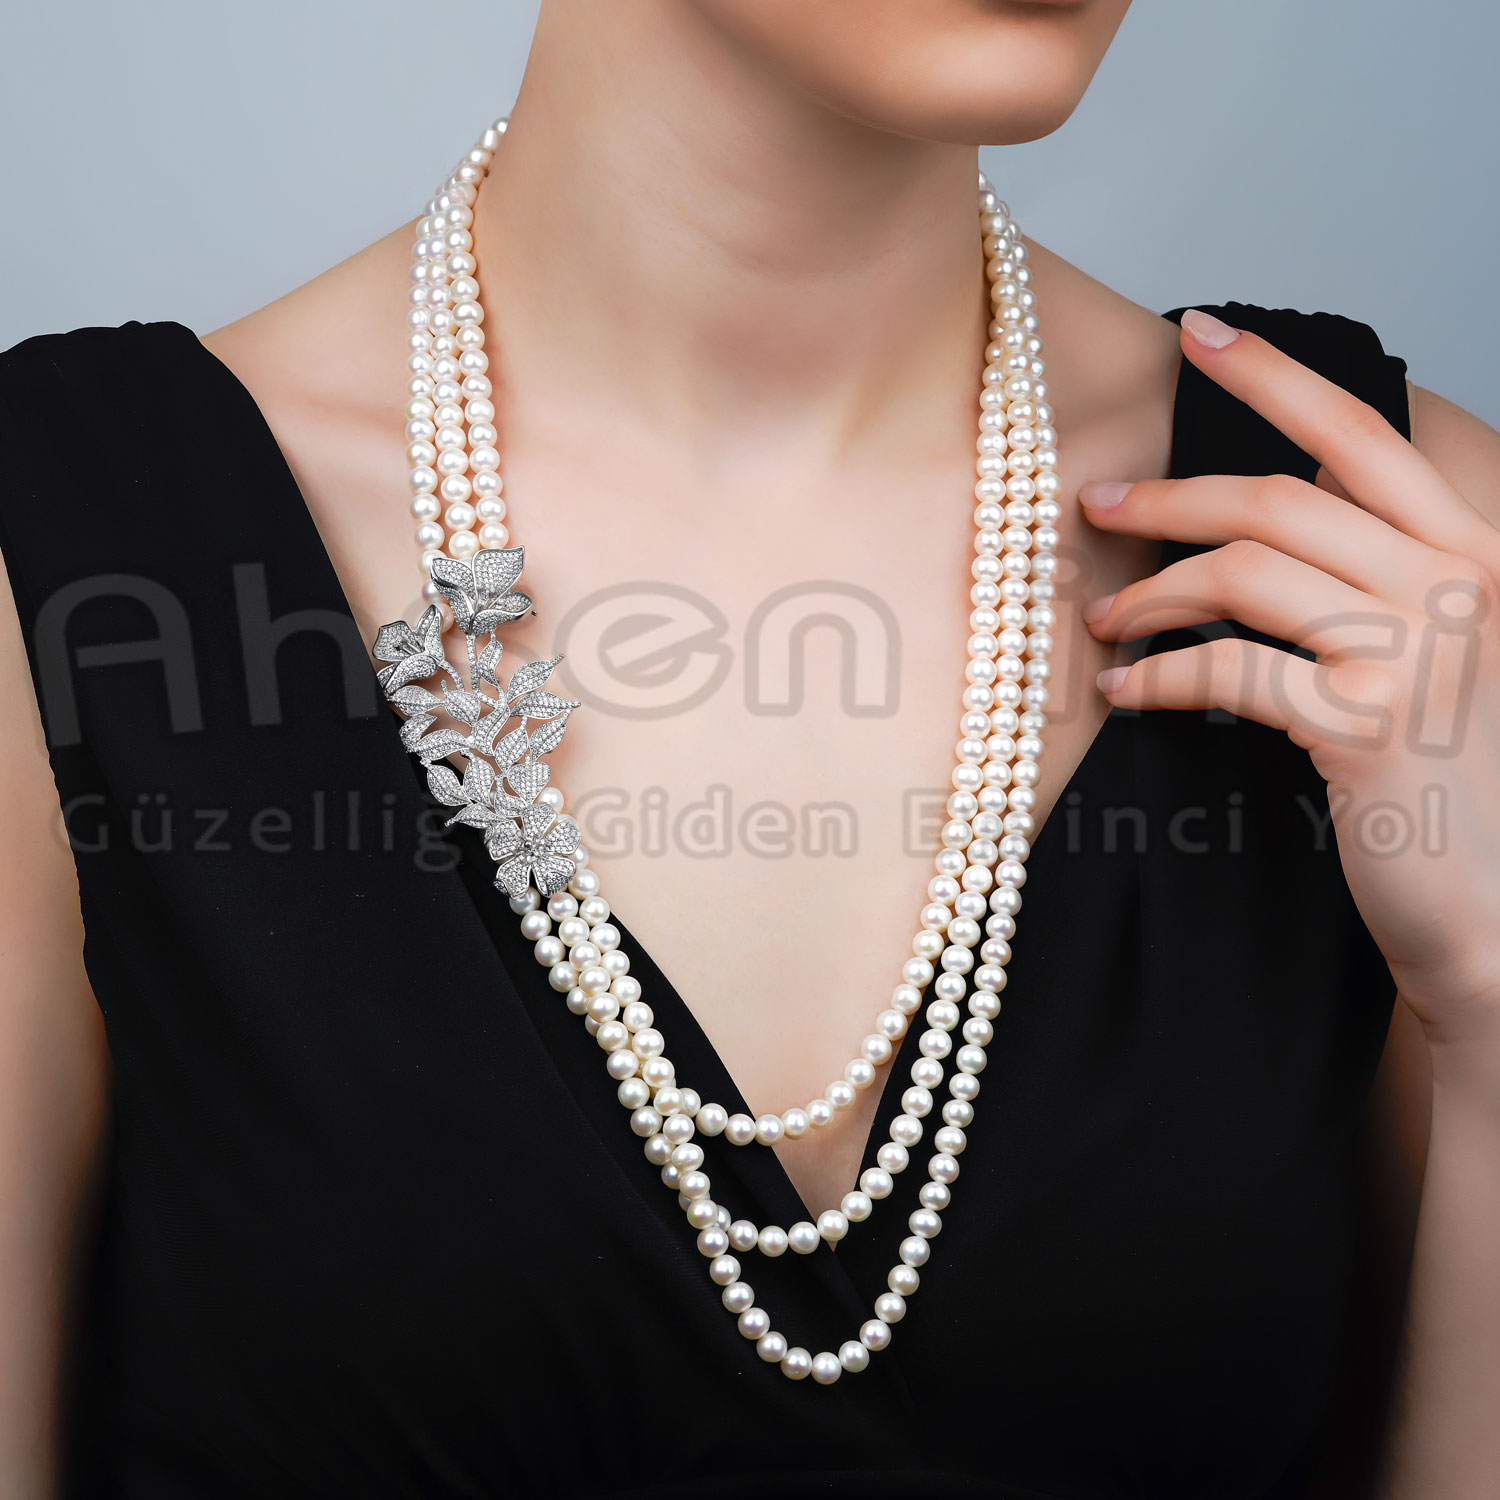 4-Reihige Natürliche Perlenkette mit Silberbrosche AH-0089 - 1